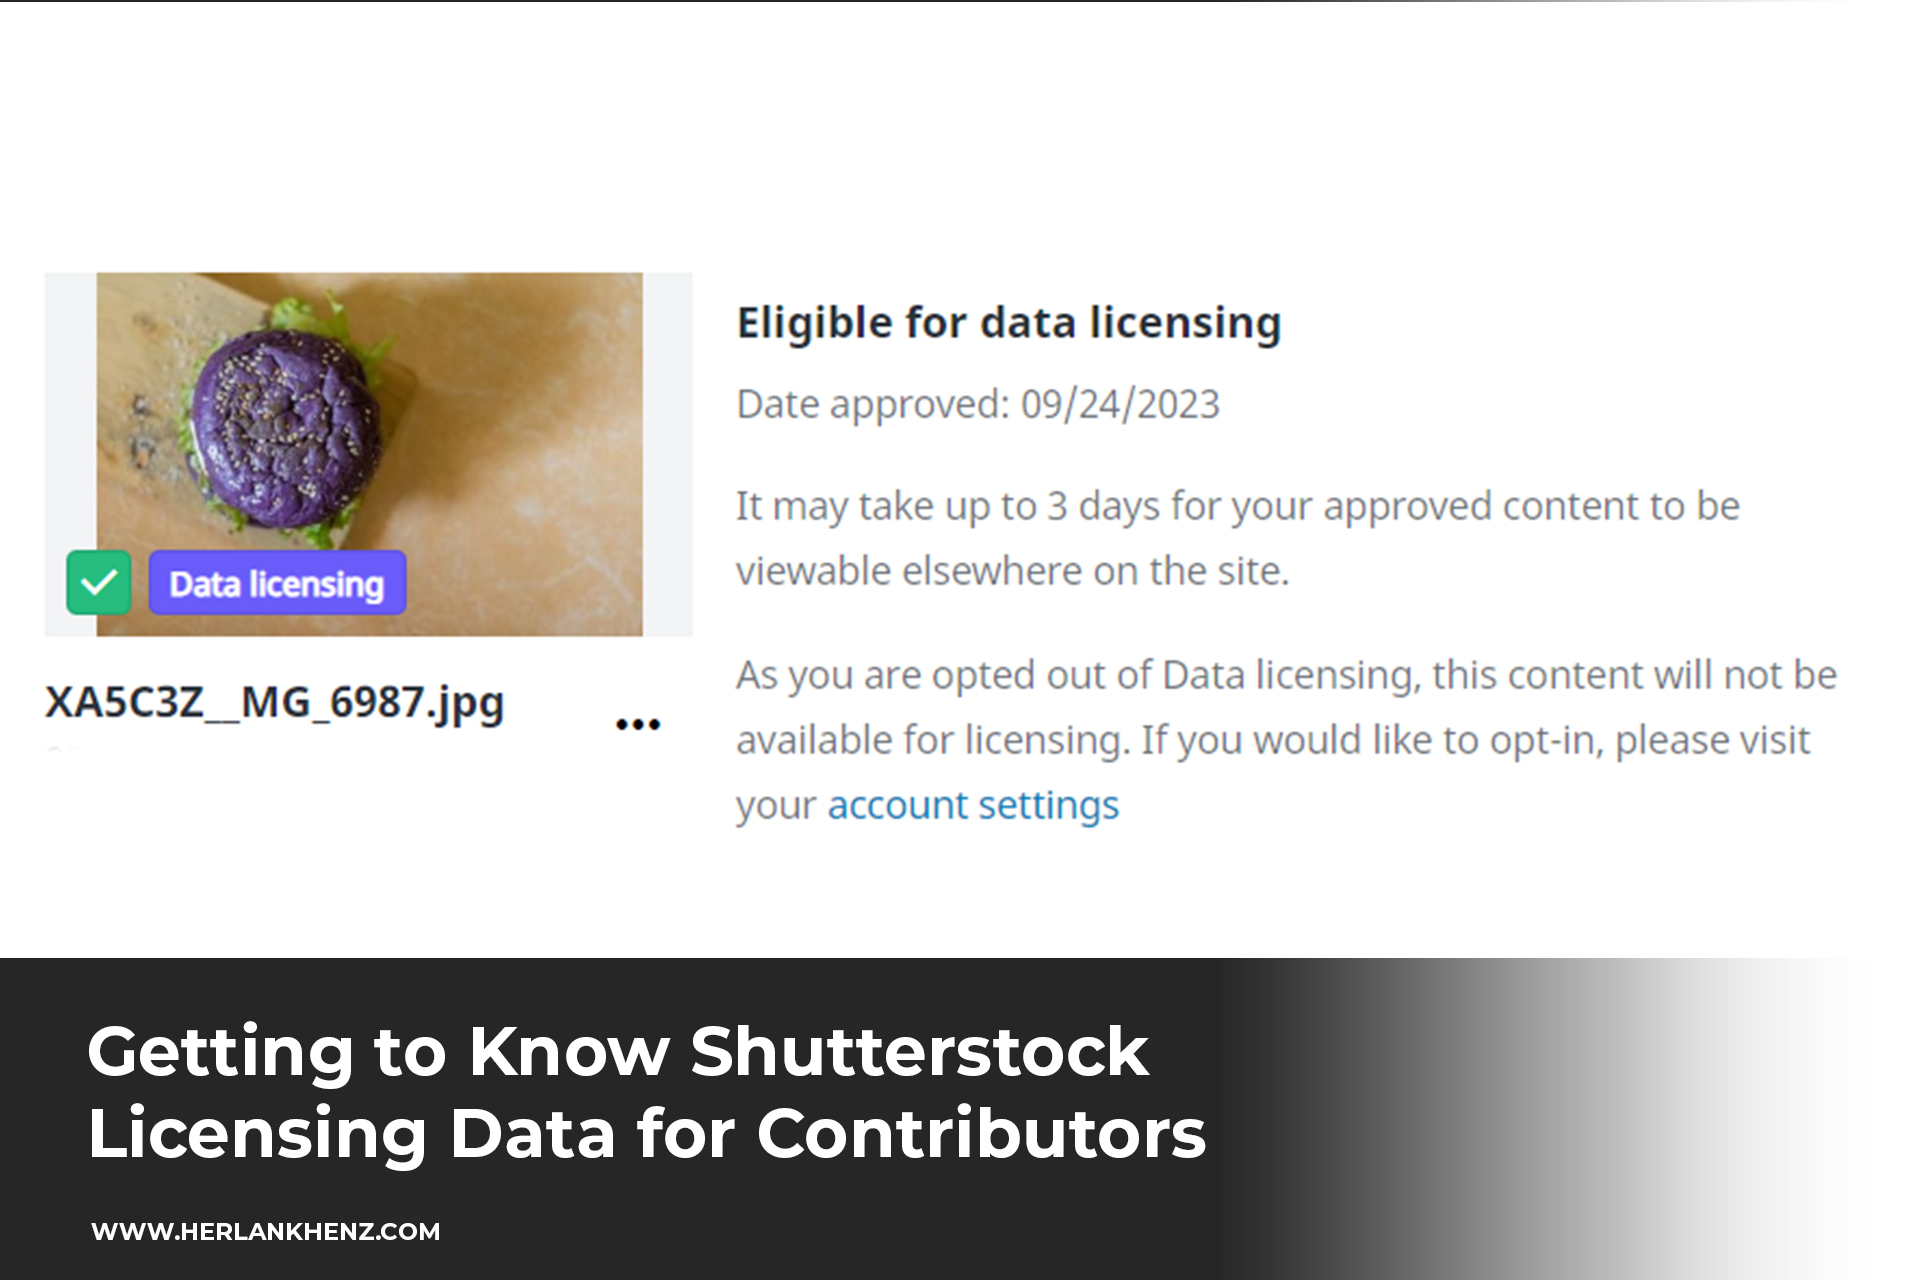 Kennenlernen der Shutterstock-Lizenzdaten für Mitwirkende